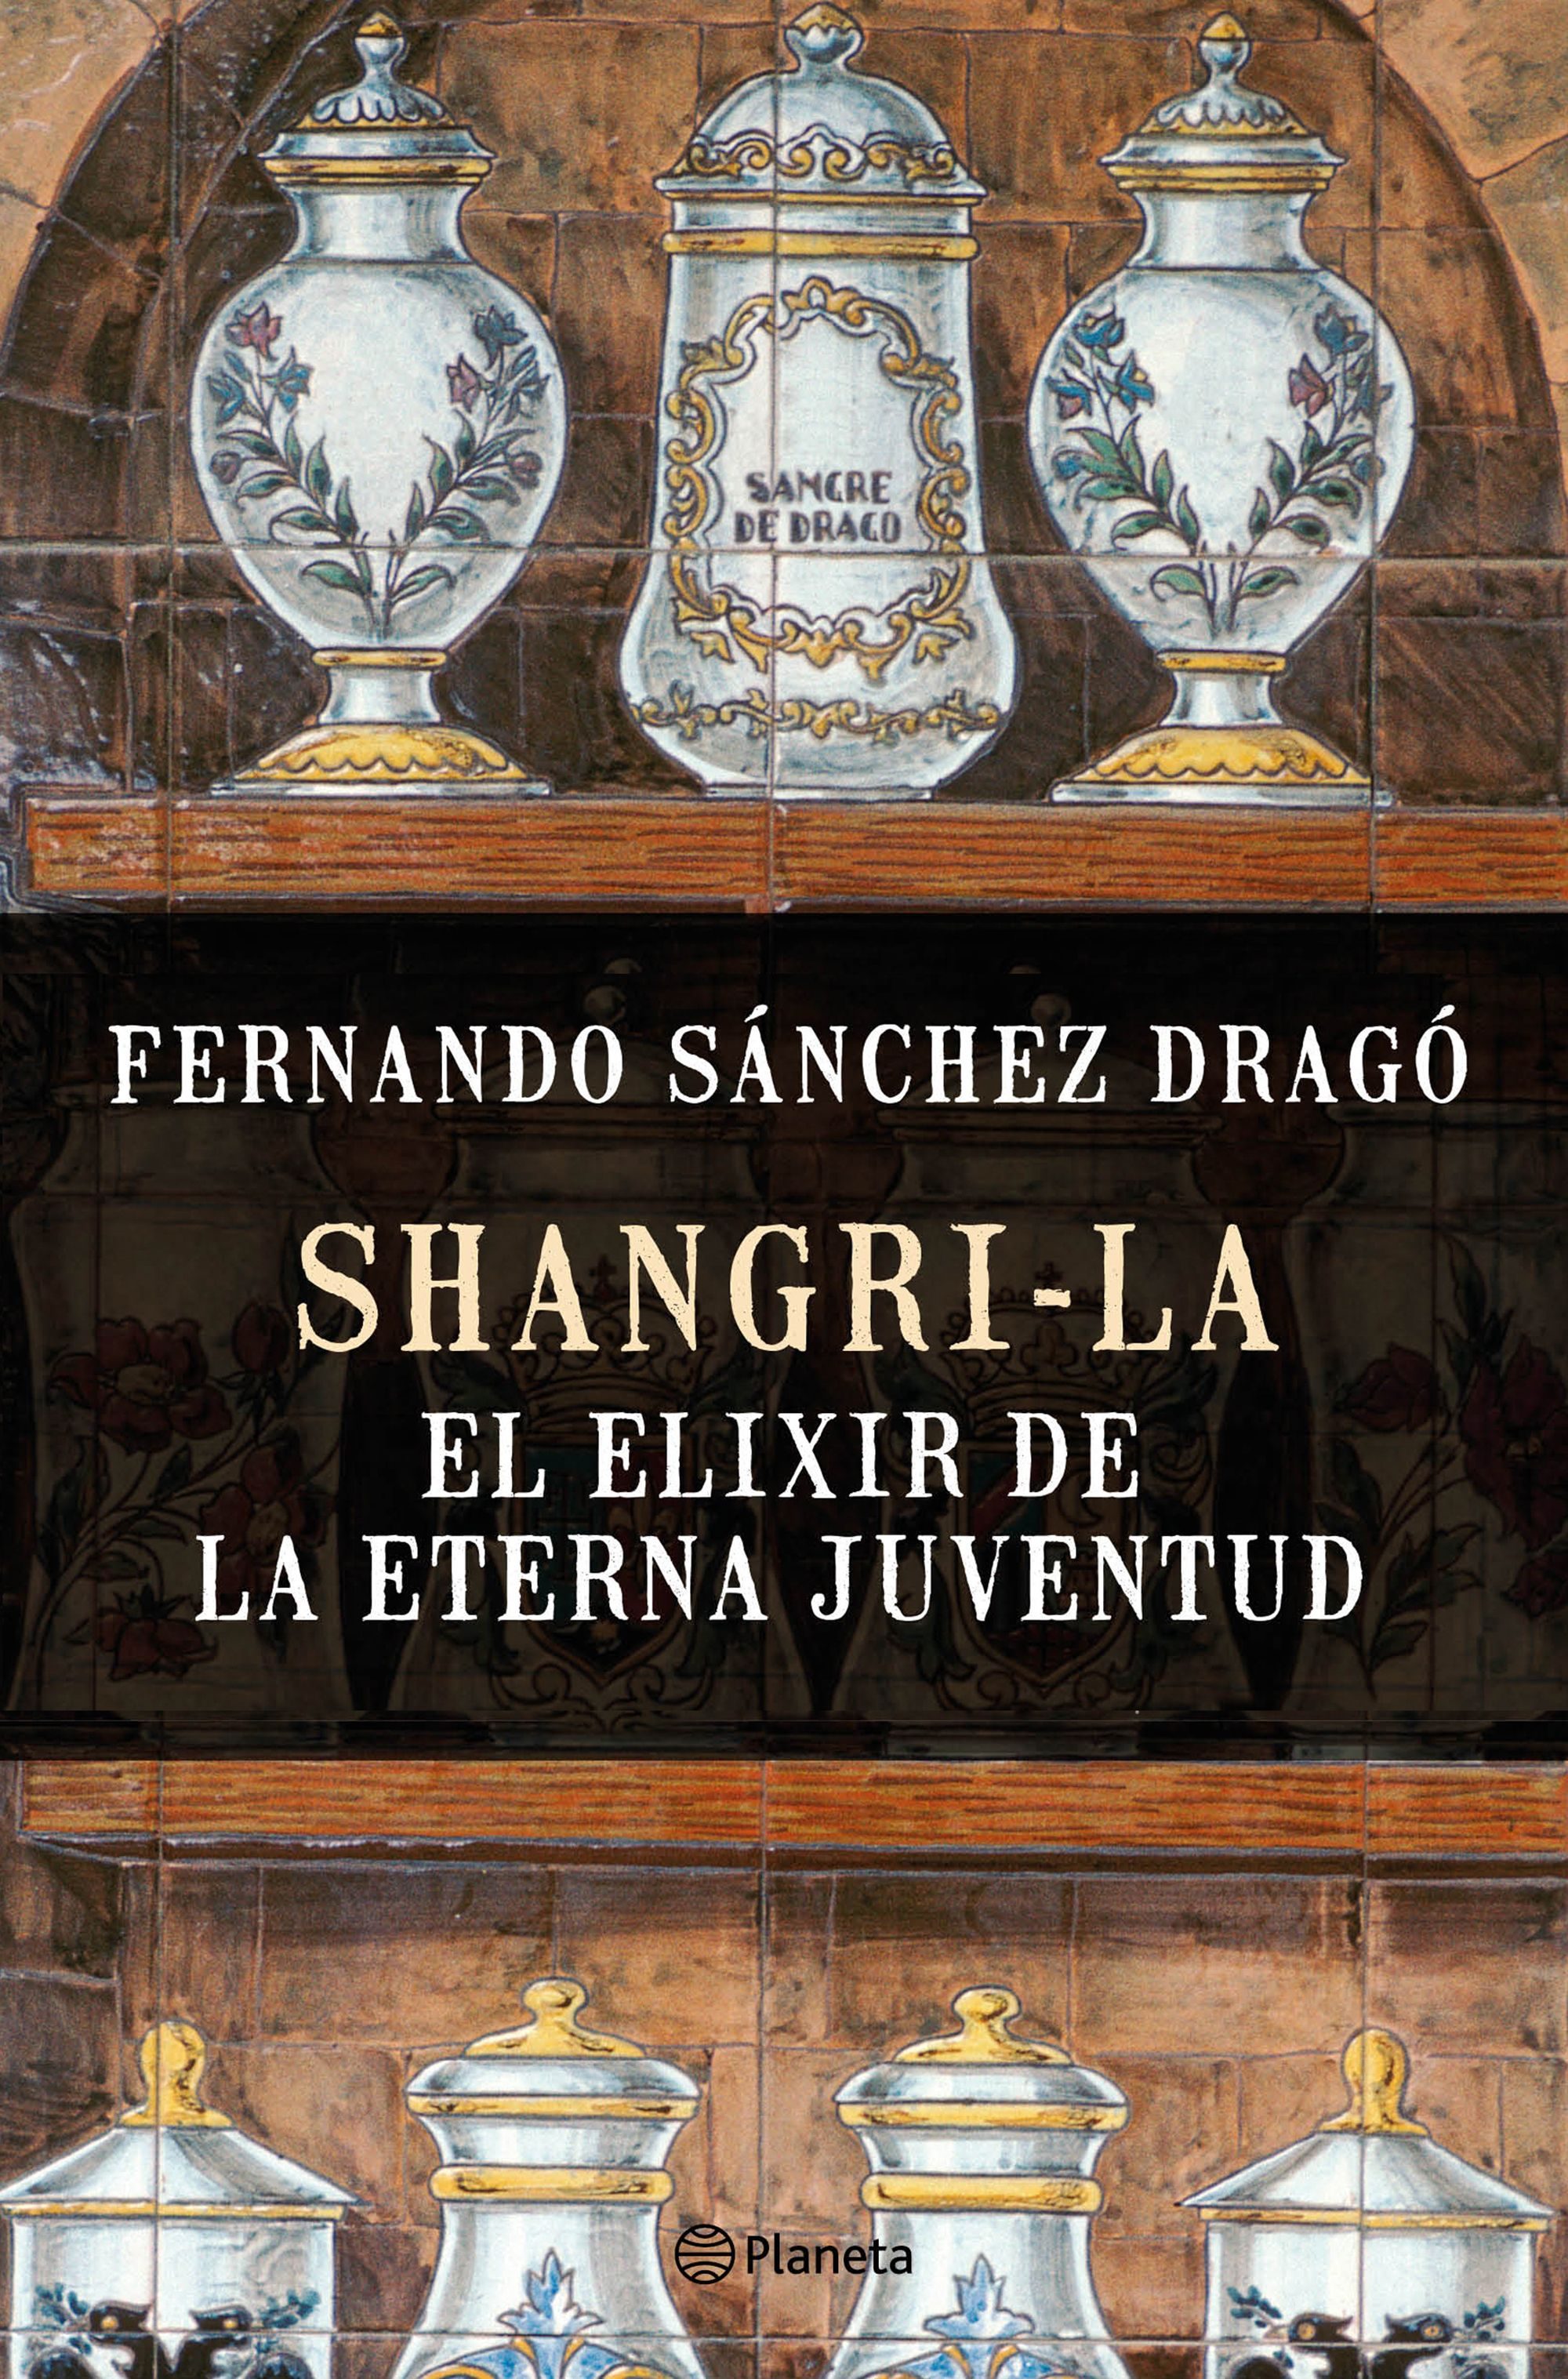 Sánchez Dragó - Shangri-La, the elixir of eternal youth